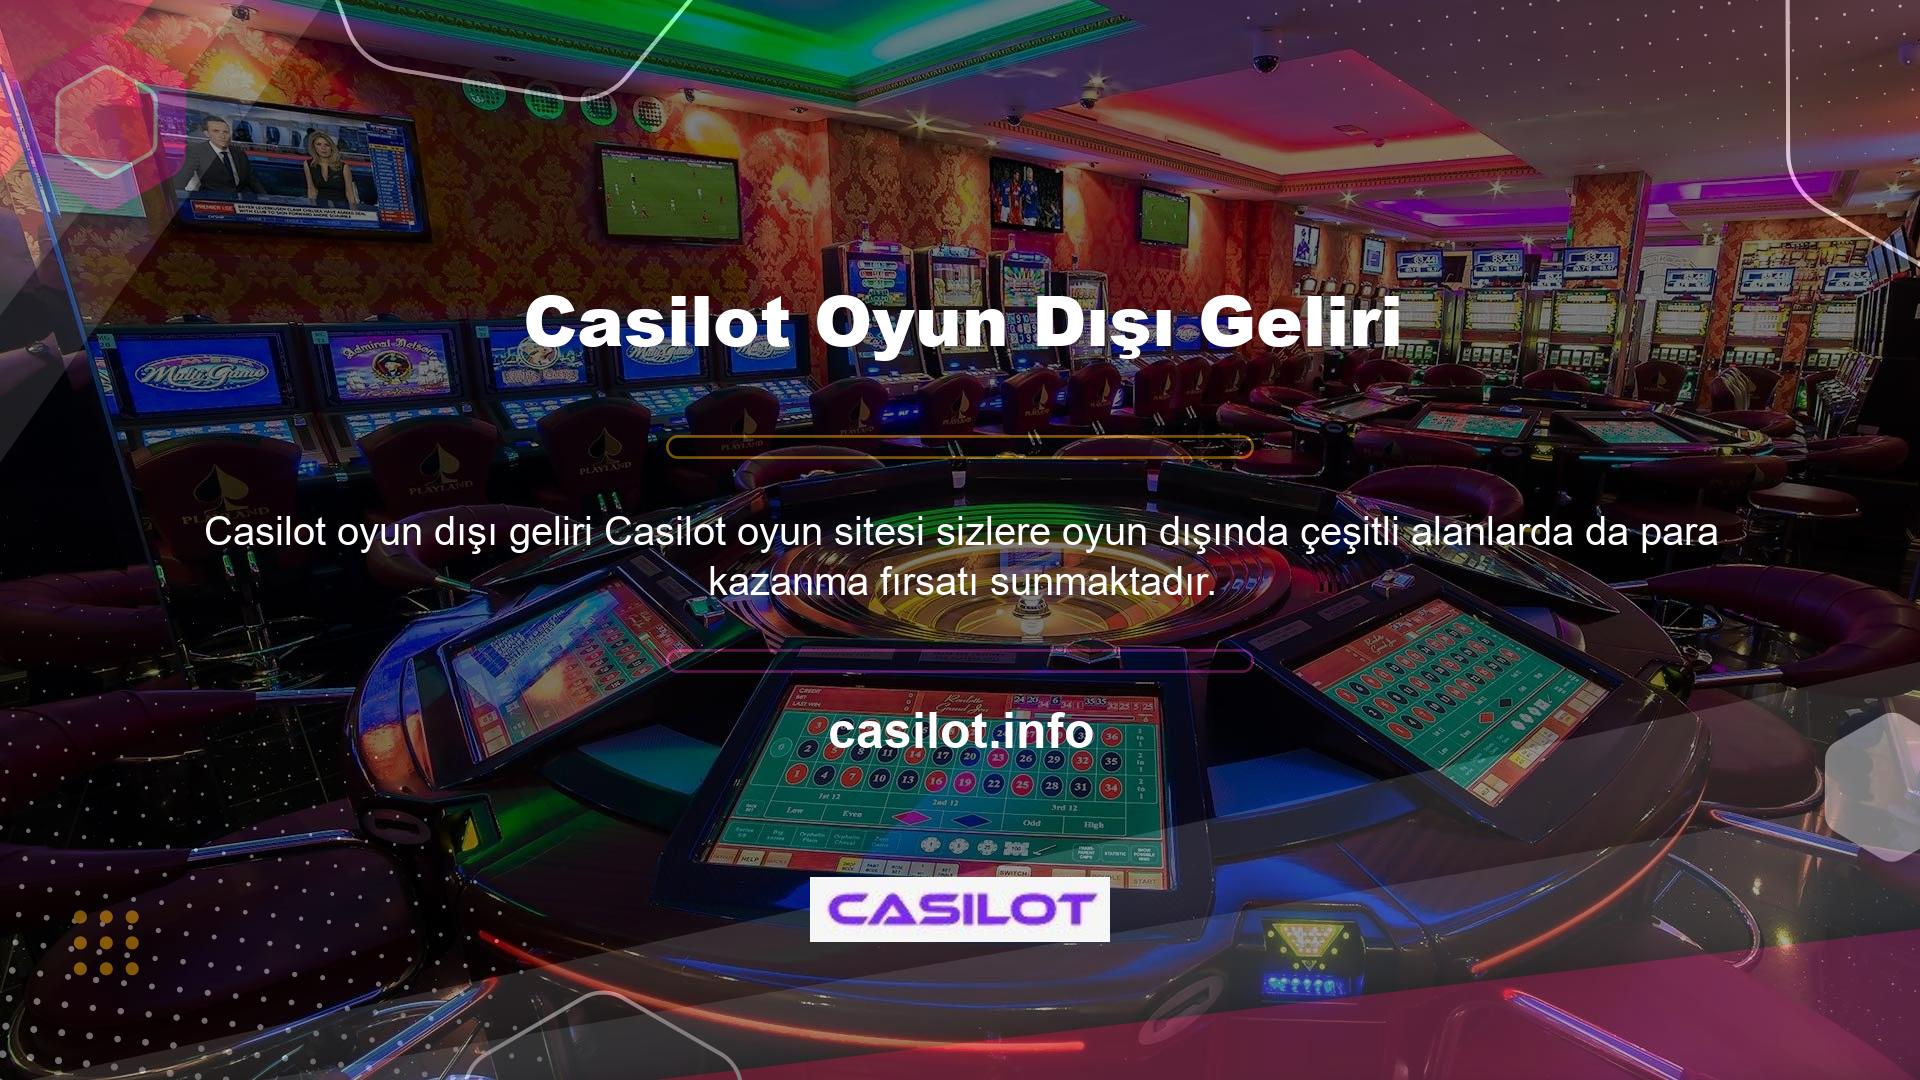 Casino slotları oynayın, bingo çekilişine katılın, poker oynayın veya bakara, blackjack veya rulette şansınızı deneyin